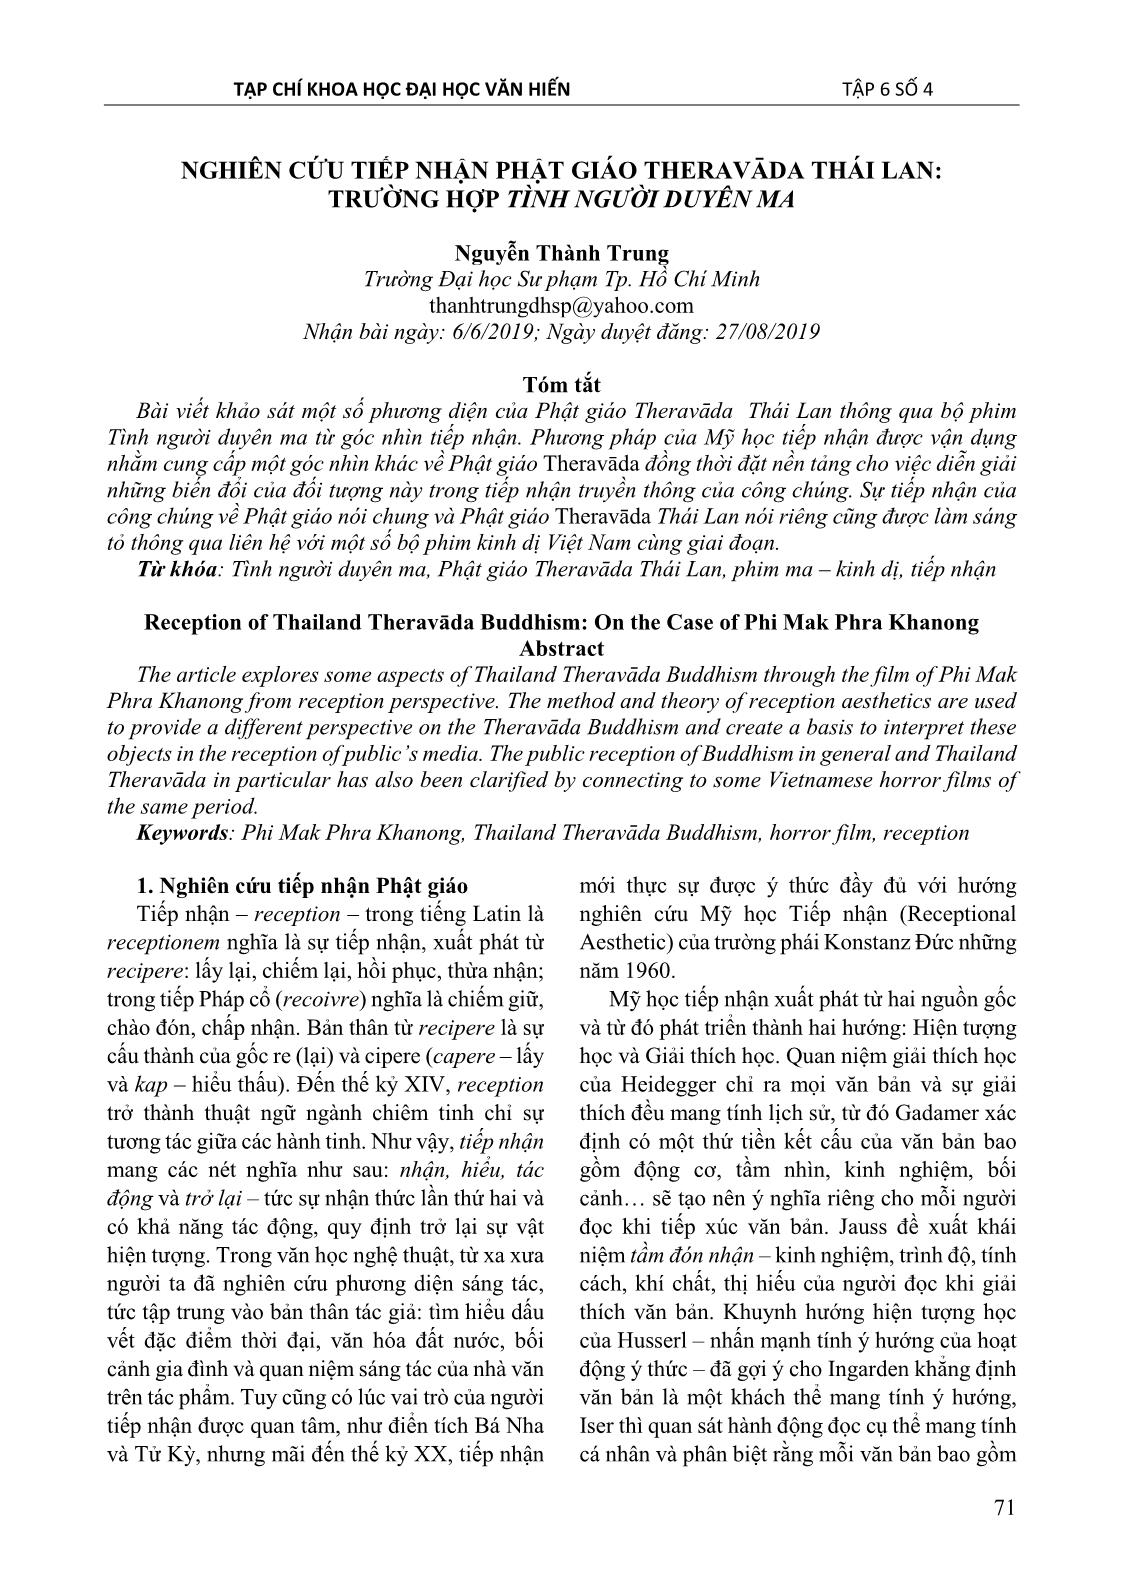 Nghiên cứu tiếp nhận Phật giáo Theravāda Thái Lan: Trường hợp tình người duyên ma trang 1